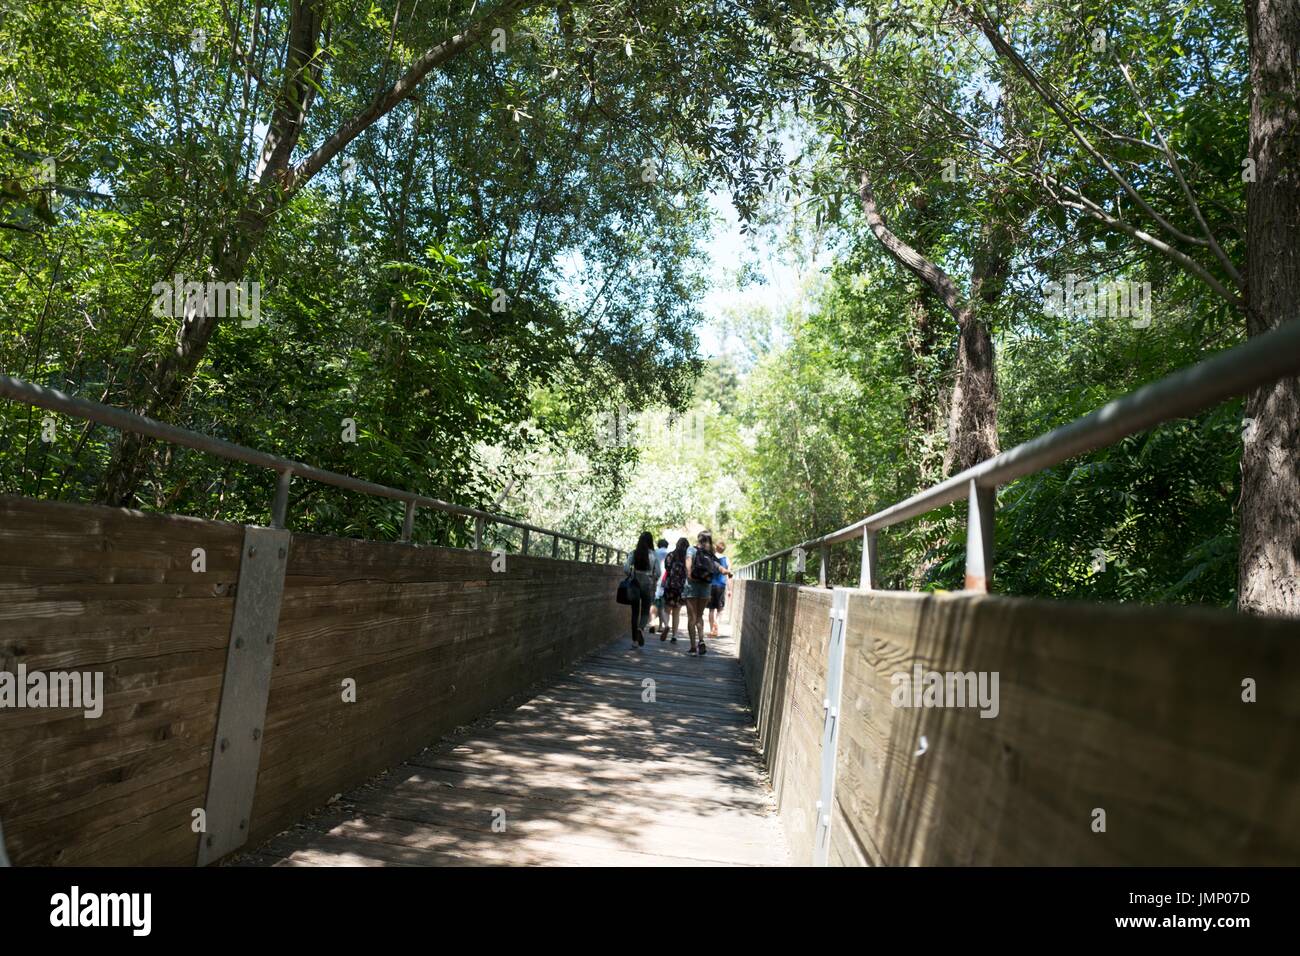 Un groupe de touristes marche dans un long et étroit pont de bois d'abattage au parc régional de Canyon, un parc régional d'East Bay dans la région de la baie de San Francisco ville de Castro Valley, Californie, le 30 juin 2017. Banque D'Images